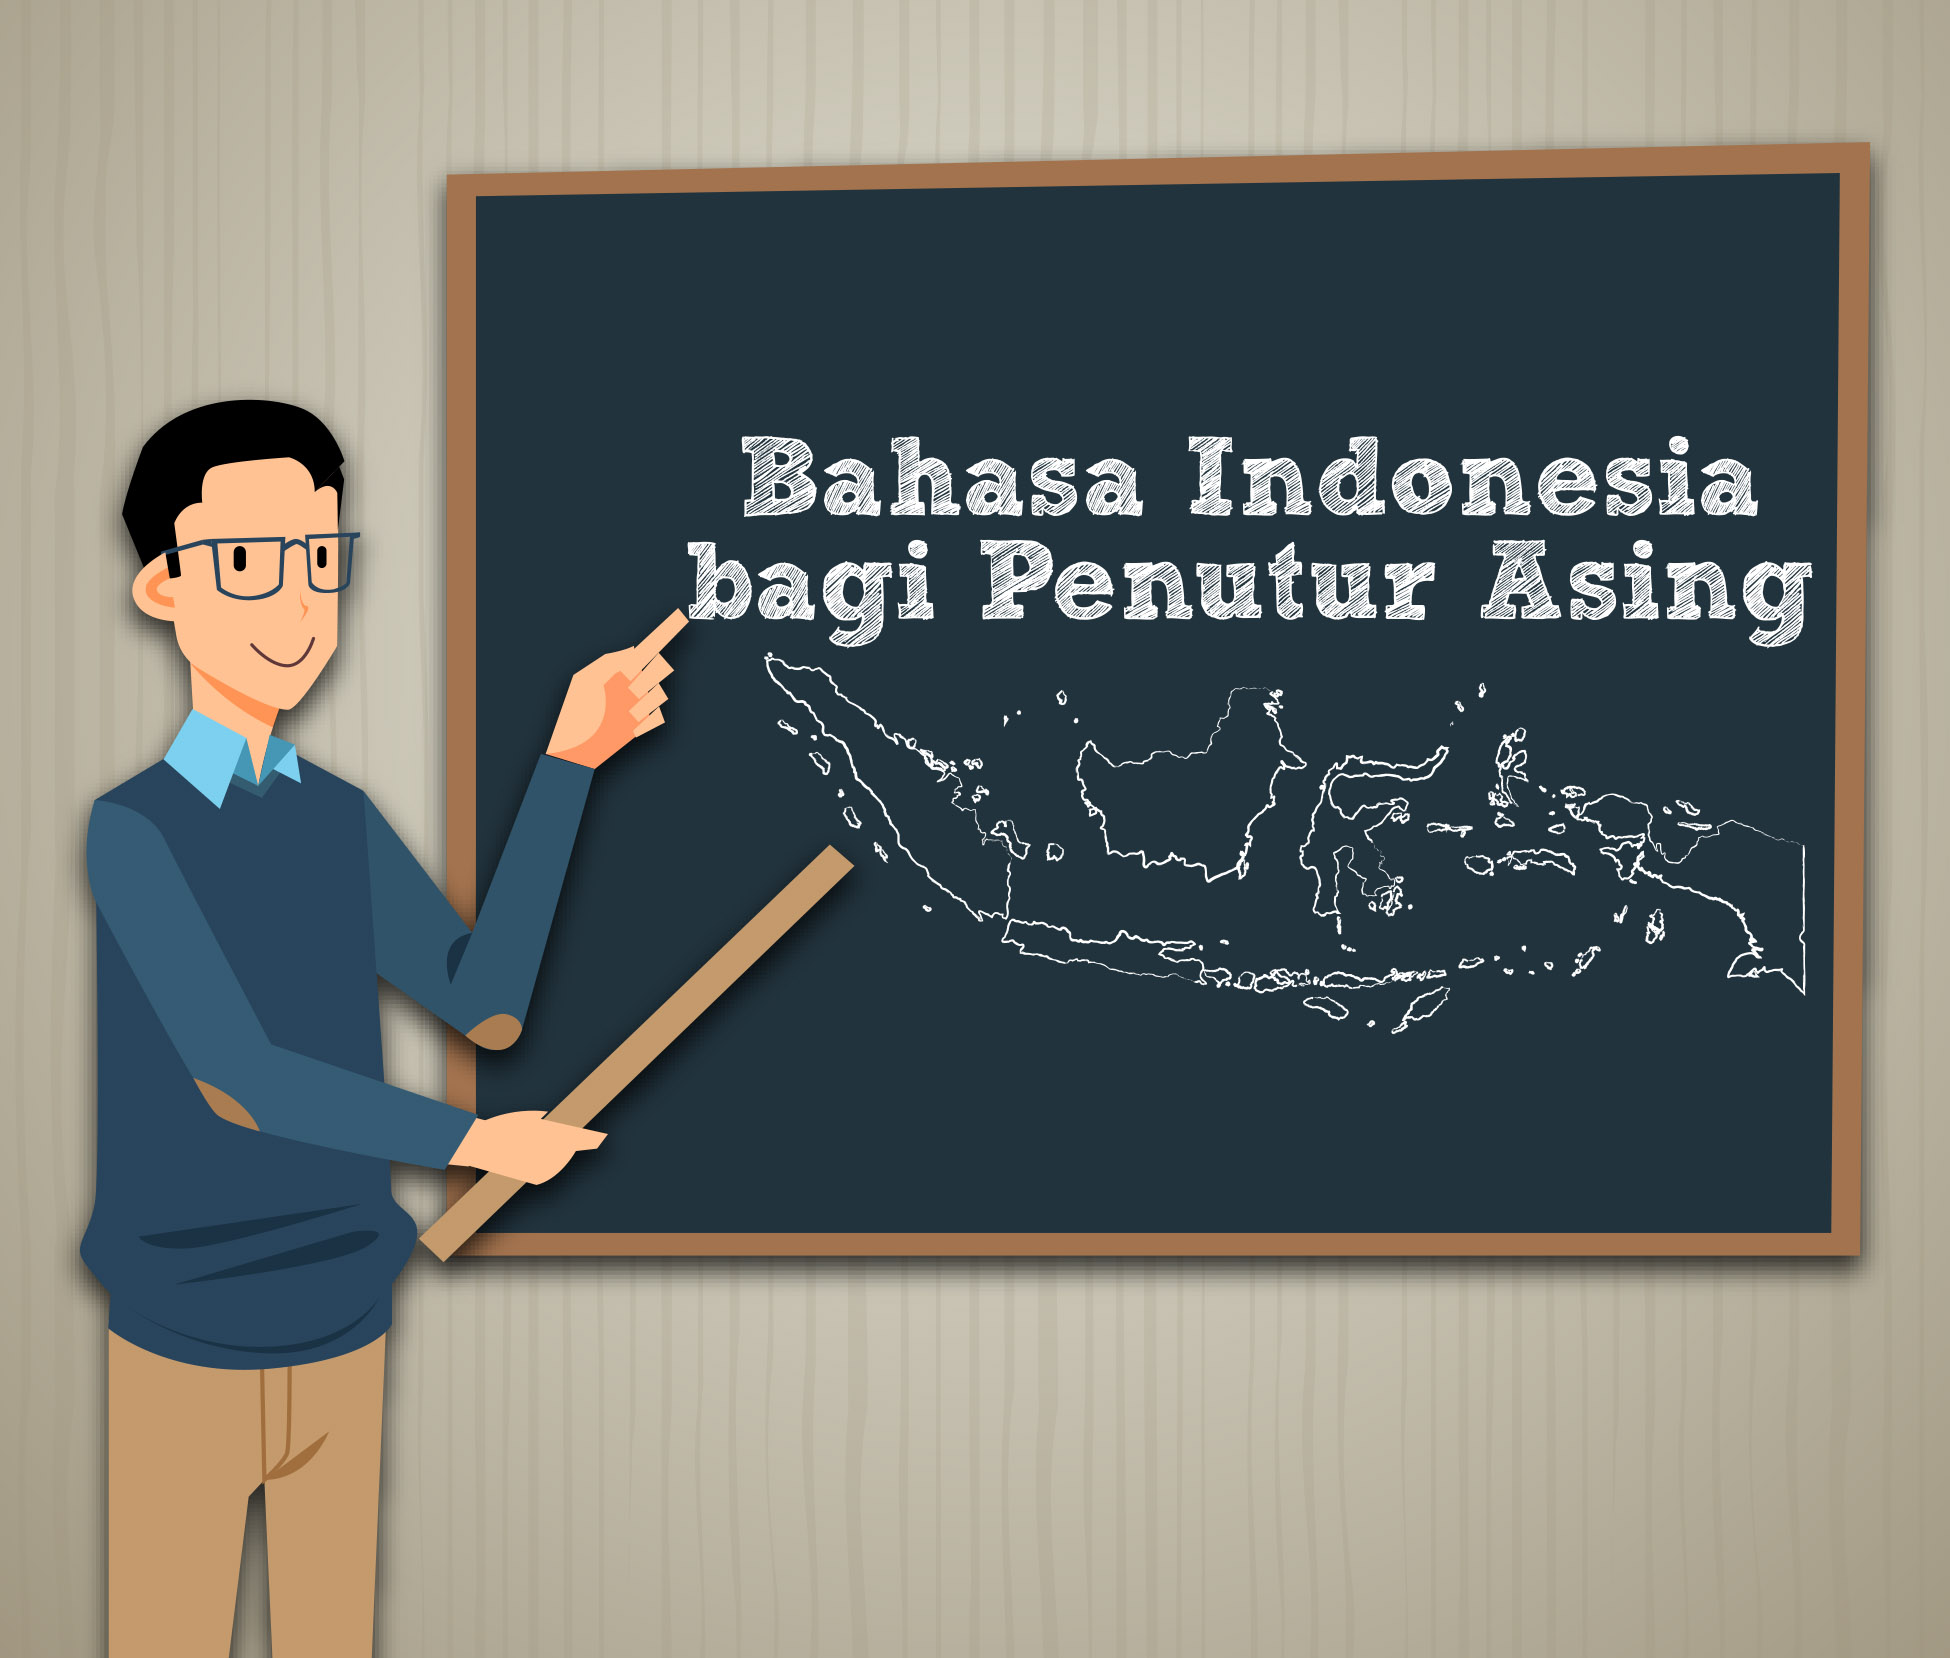 Bahasa Indonesia: Gampang Dipelajari, Susah Dikuasai? Rahasia di Balik Kekuatan dan Kompleksitasnya